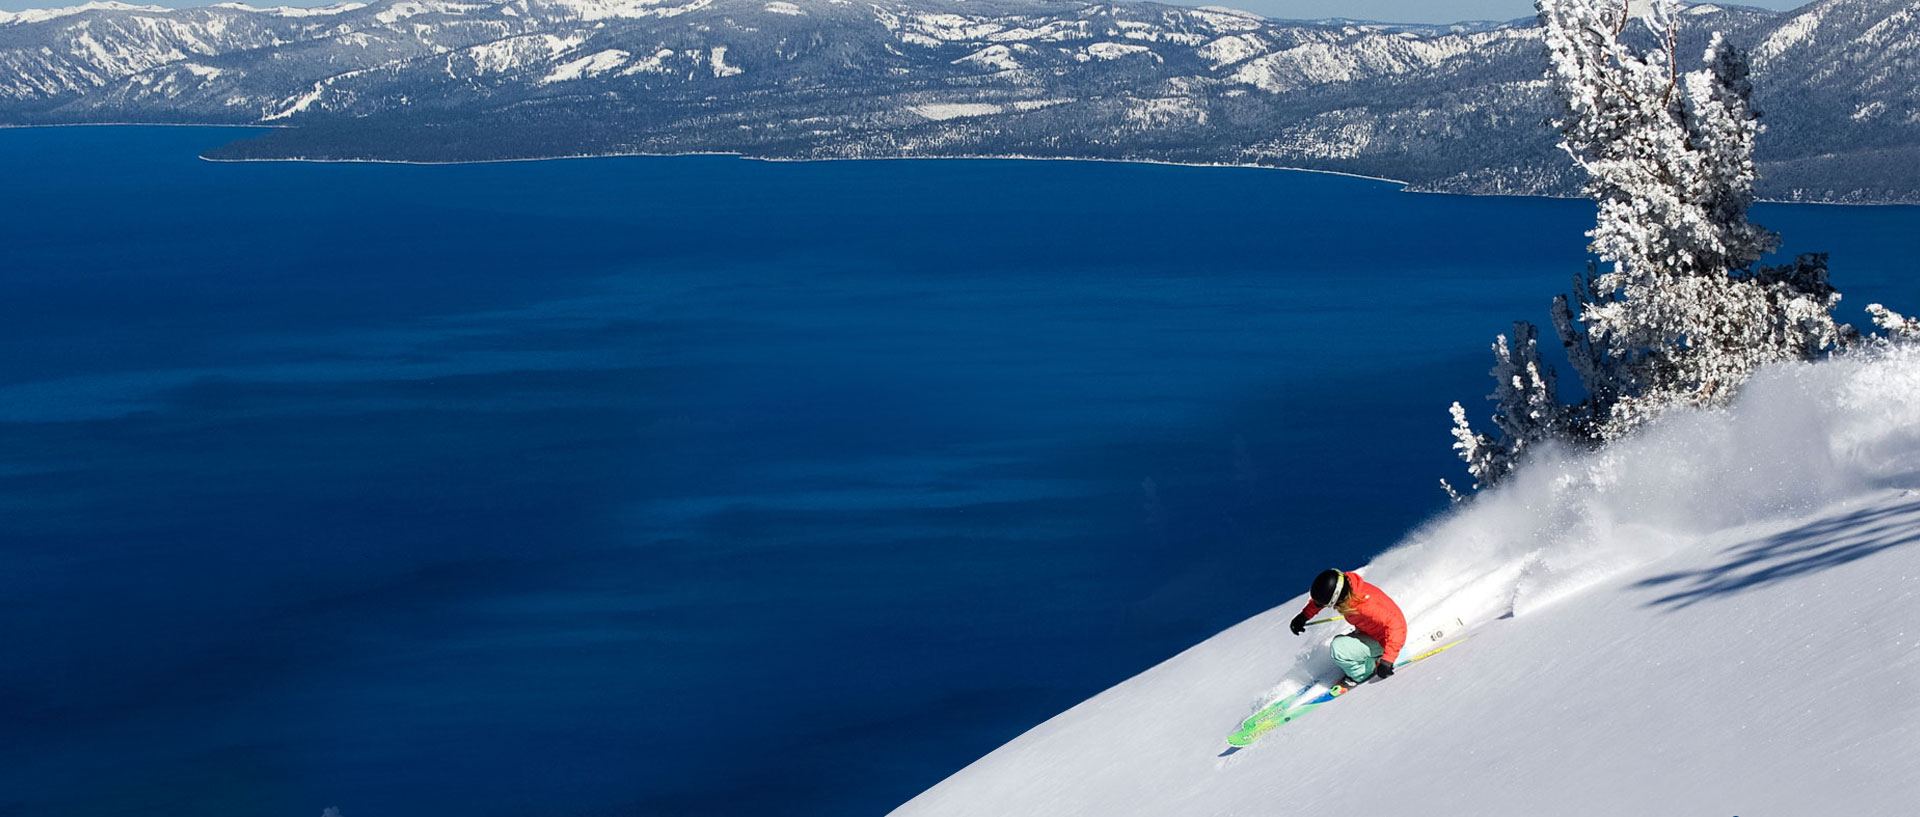 Ski Lake Tahoe Tahoe Ski Resorts, Winter Vacation Planning